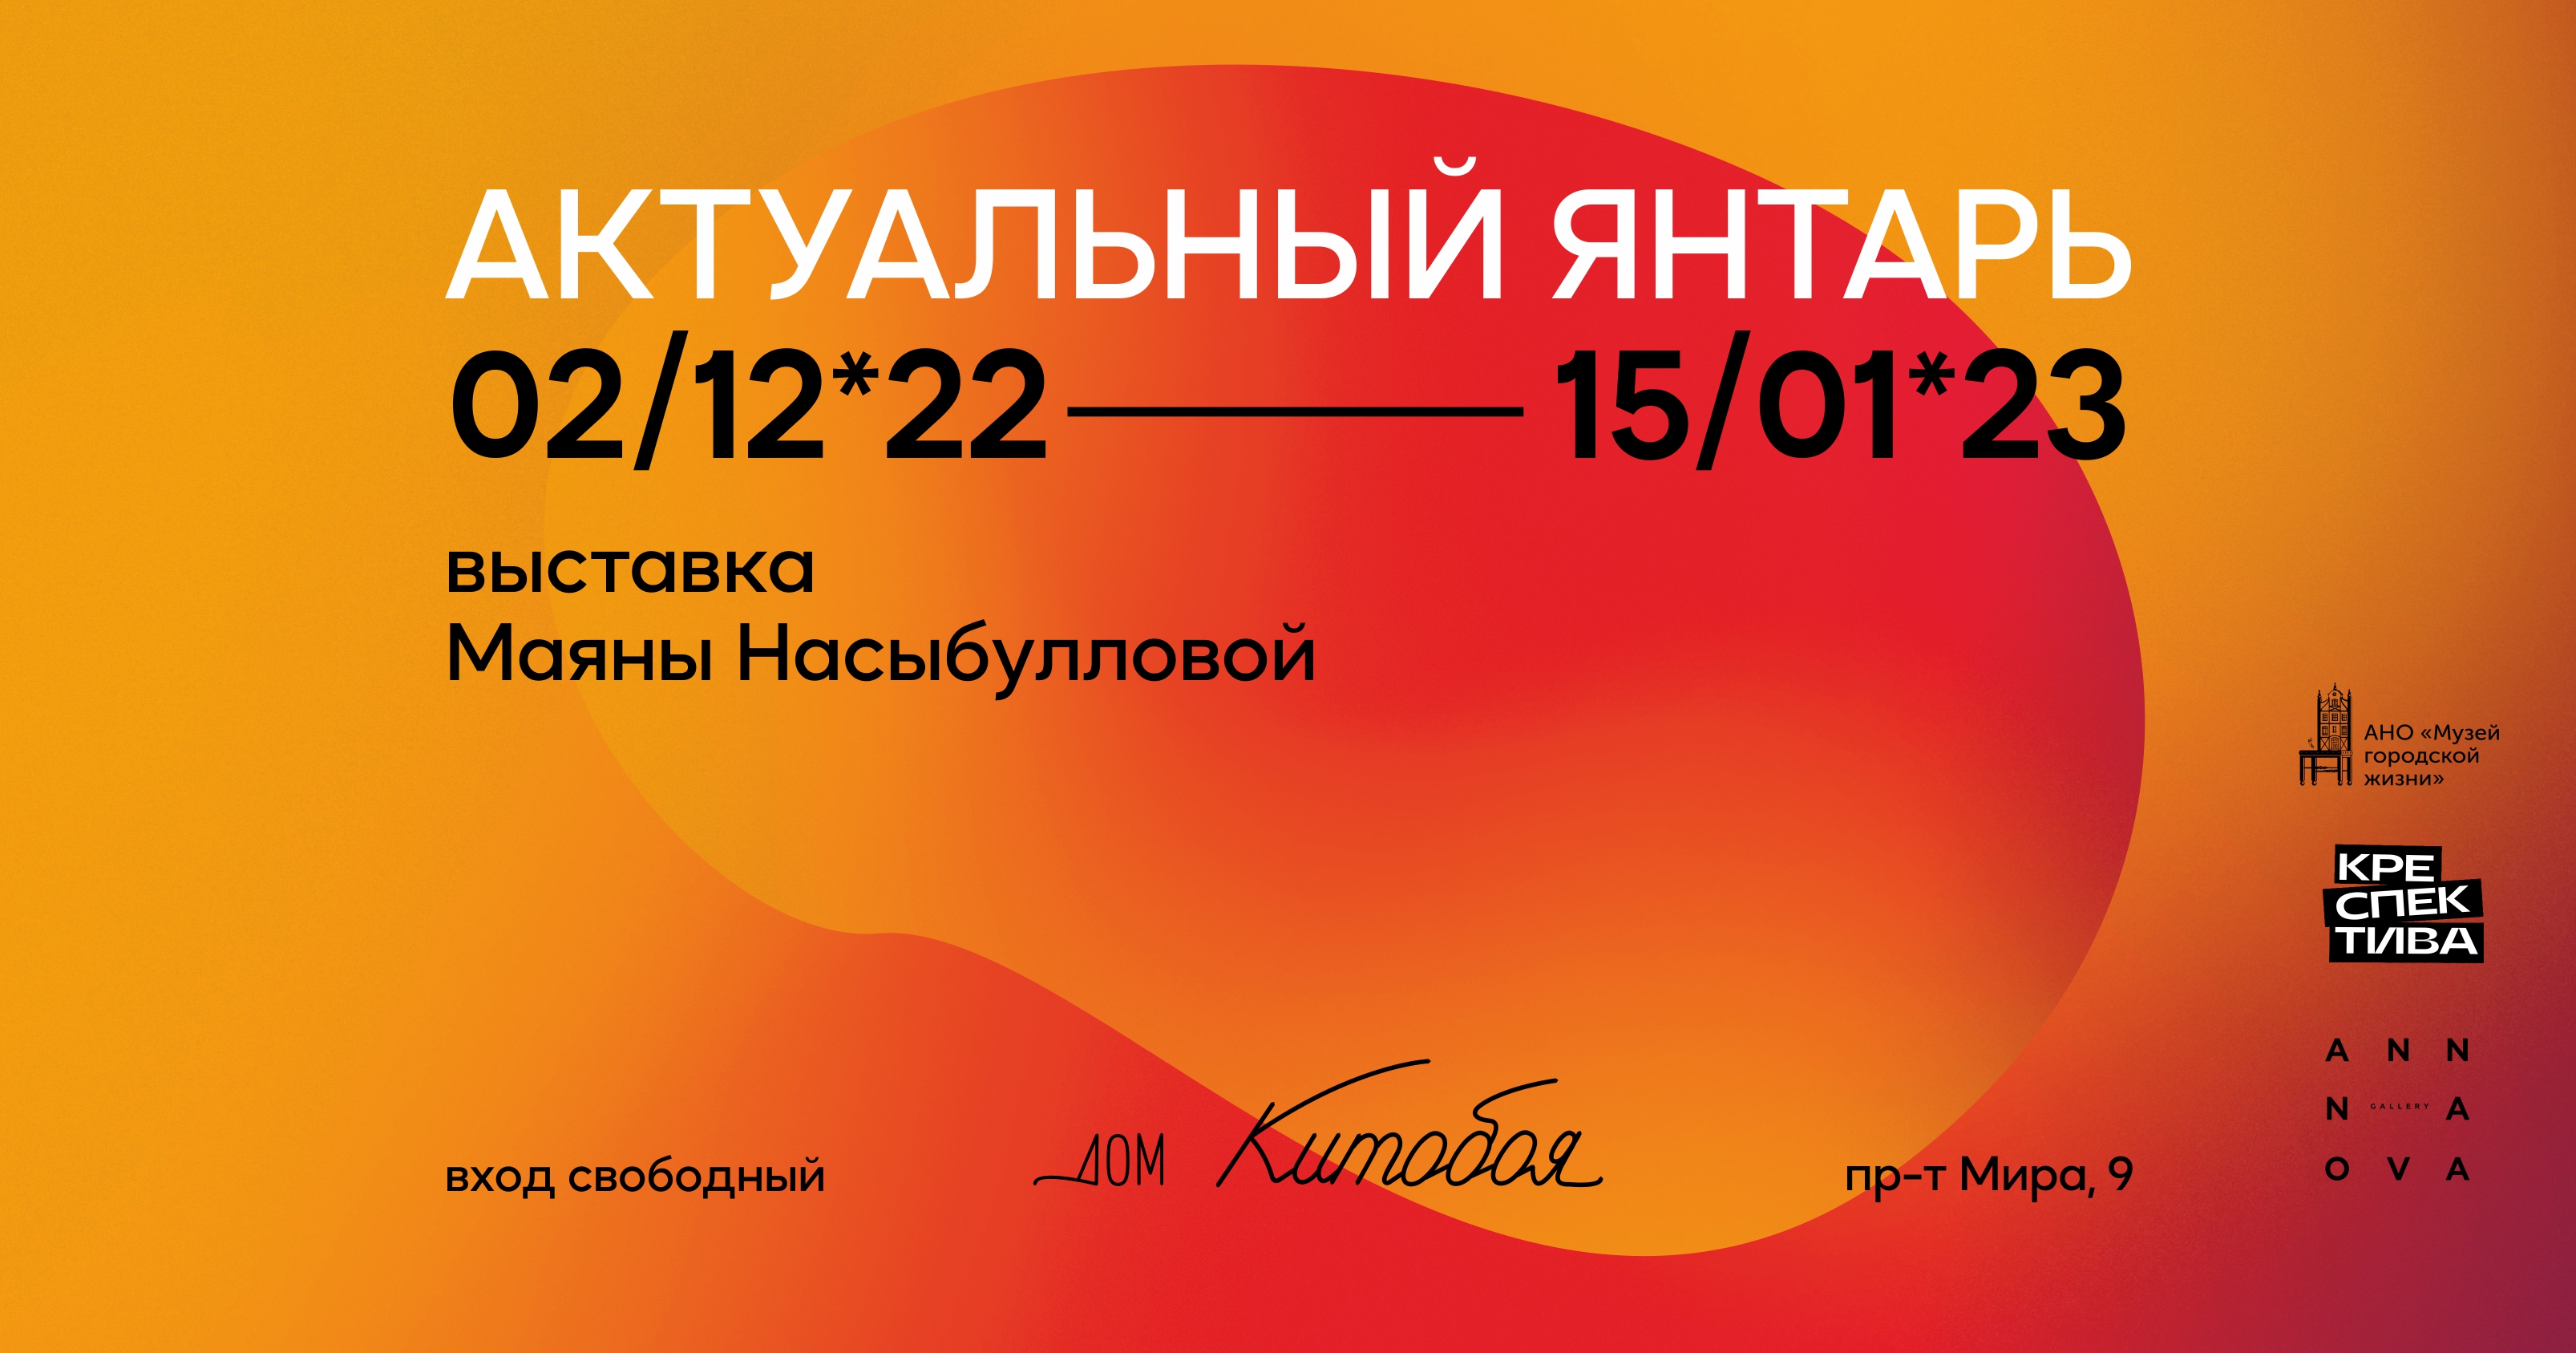 До 15 января, с 10:00 до 19:00, вход свободныйМузей «Дом китобоя». Калининград, проспект Мира, 9 